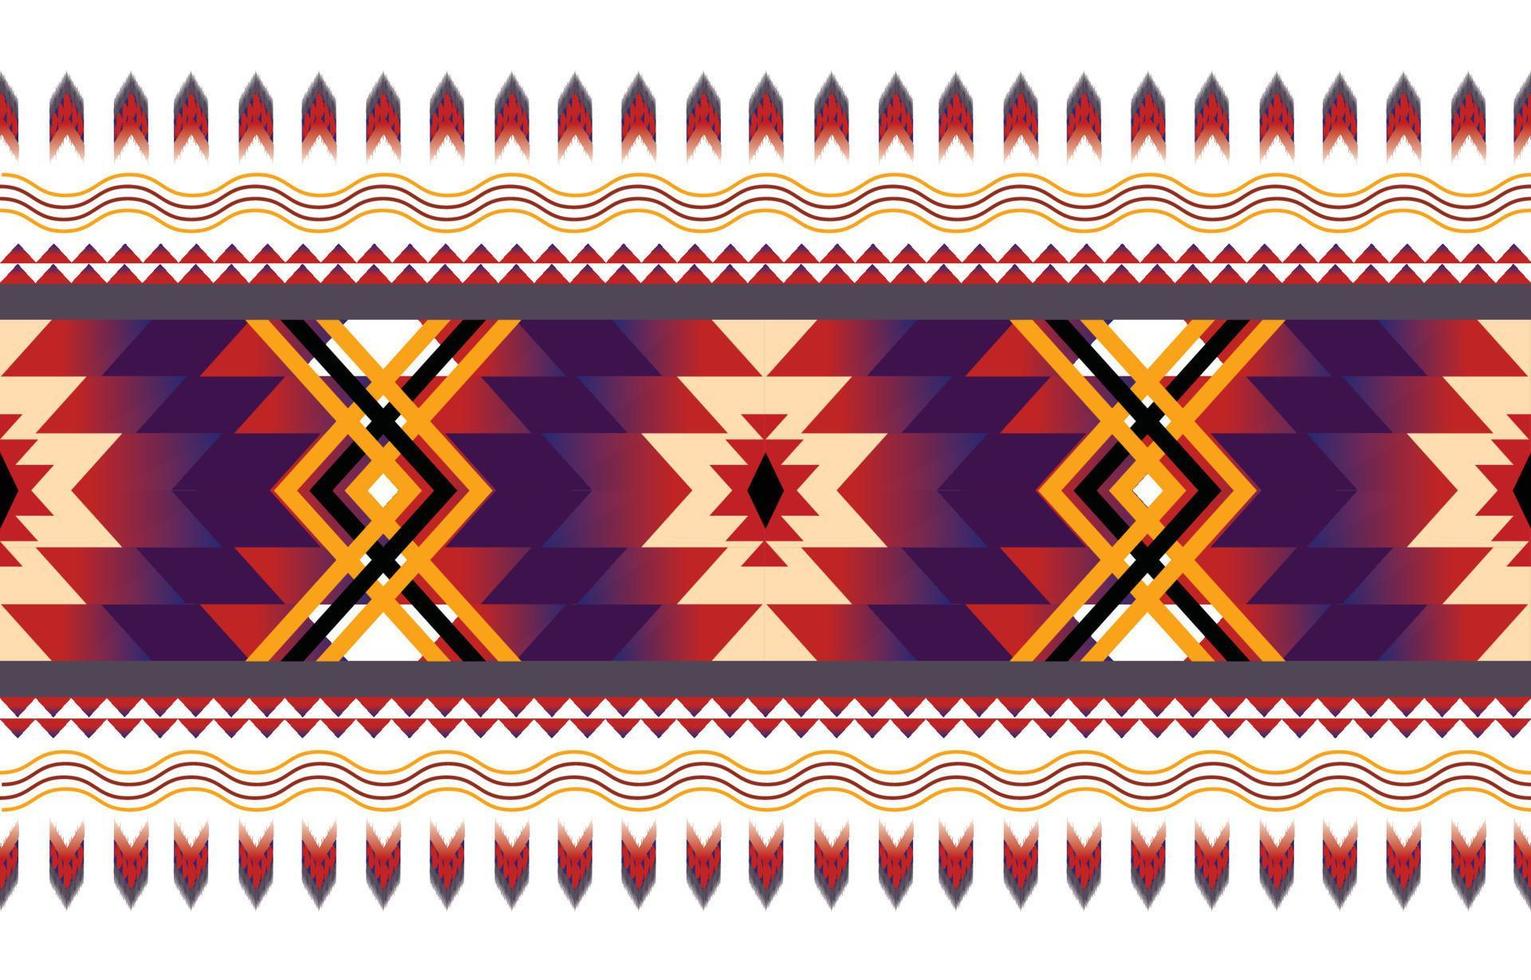 geometrischer ethnischer Mustervektor. afrikanisches, amerikanisches, mexikanisches, westliches aztekisches gestreiftes und böhmisches Muster. entworfen für hintergrund, tapete, druck, teppich, verpackung, fliesen, batik.vektor illustratoin. vektor